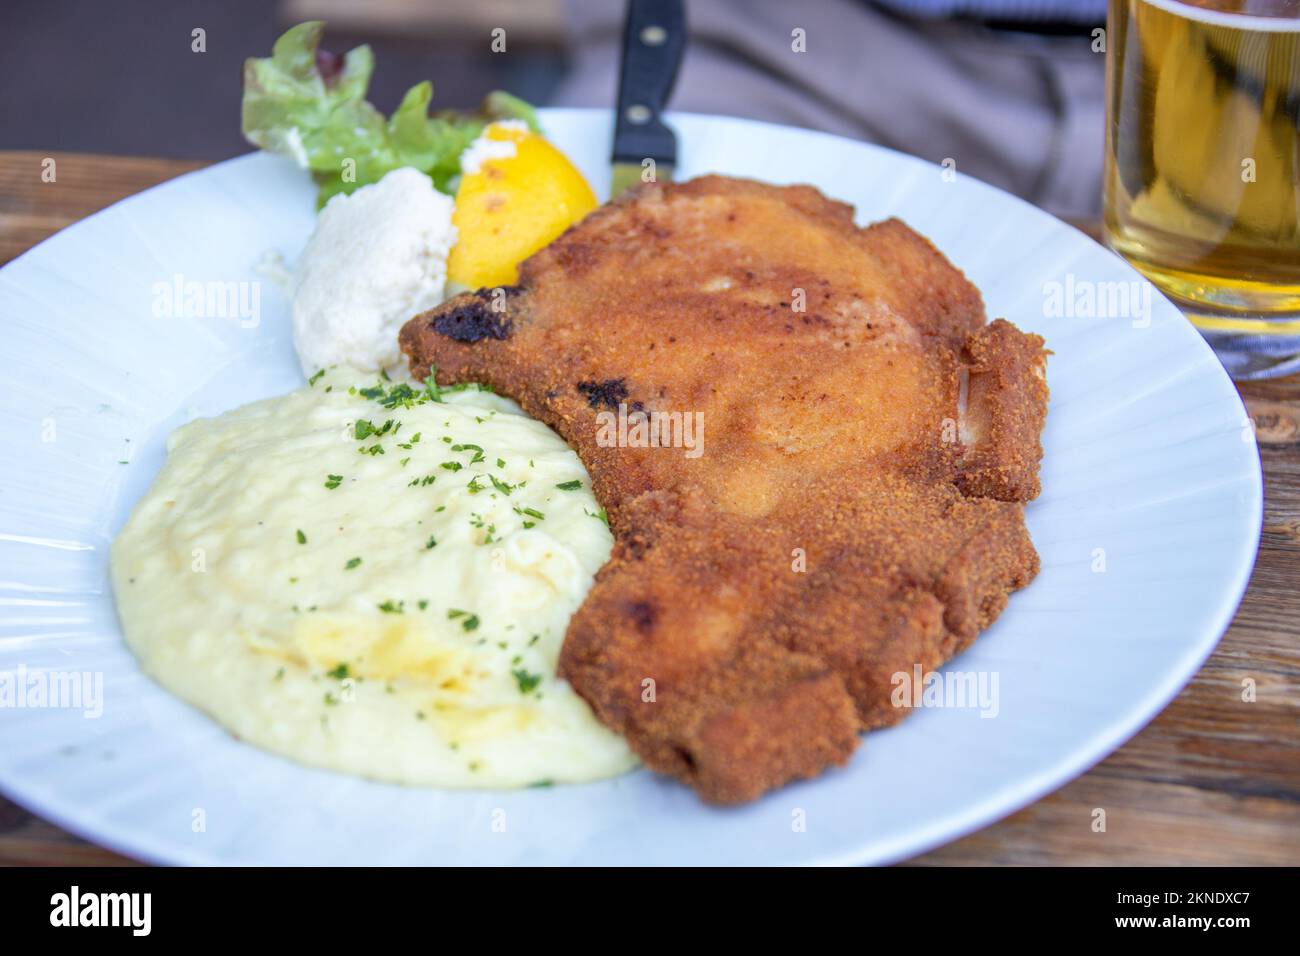 Paniertes Schweineschnitzel at Apfelwein Solzer restaurant, Frankfurt, Germany Stock Photo